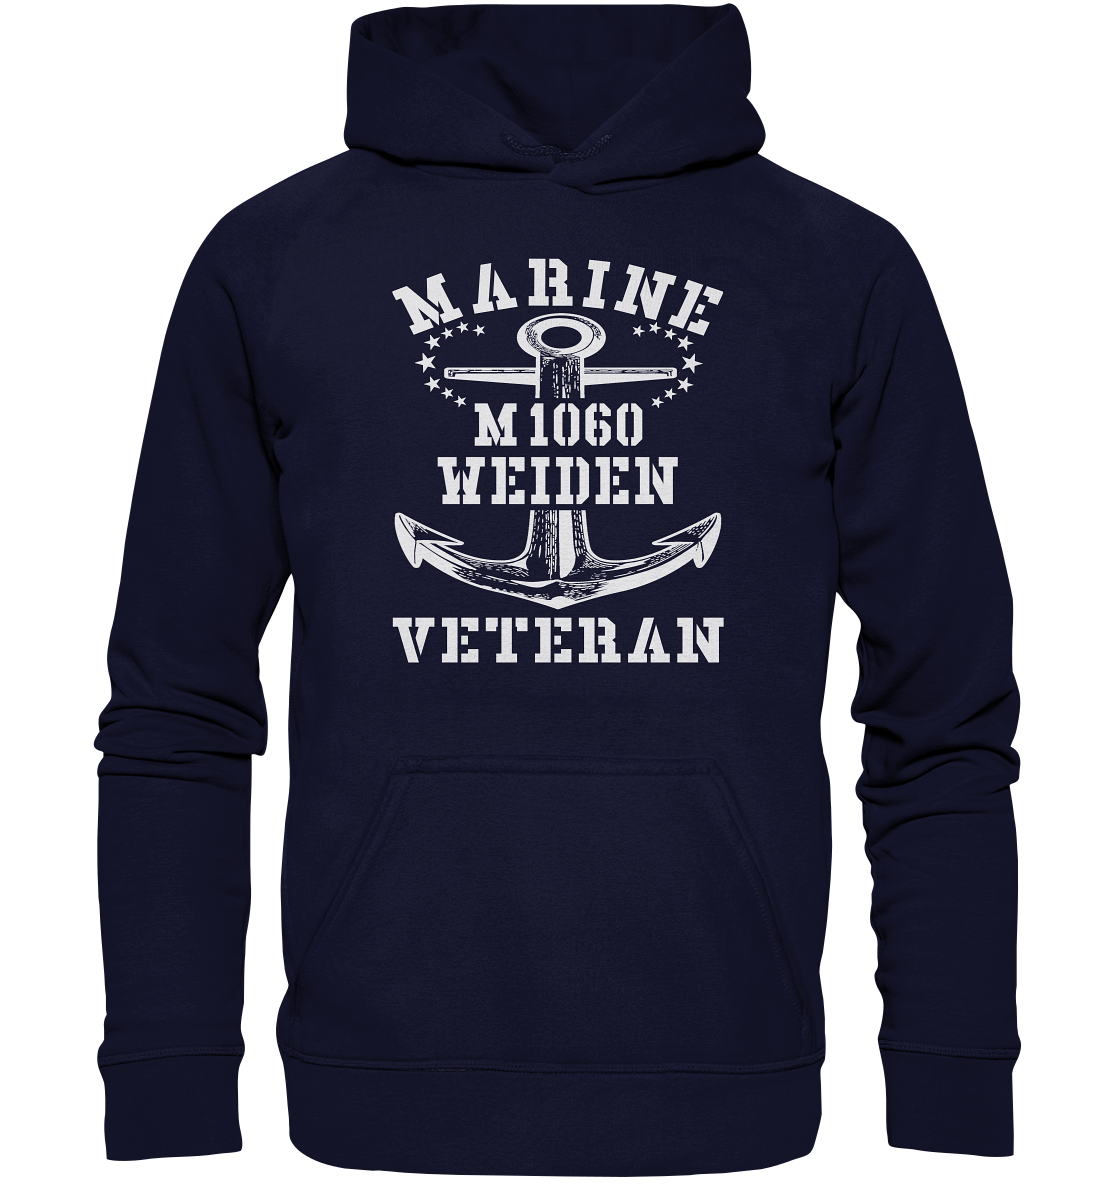 Mij.-Boot M1060 WEIDEN Marine Veteran - Basic Unisex Hoodie XL